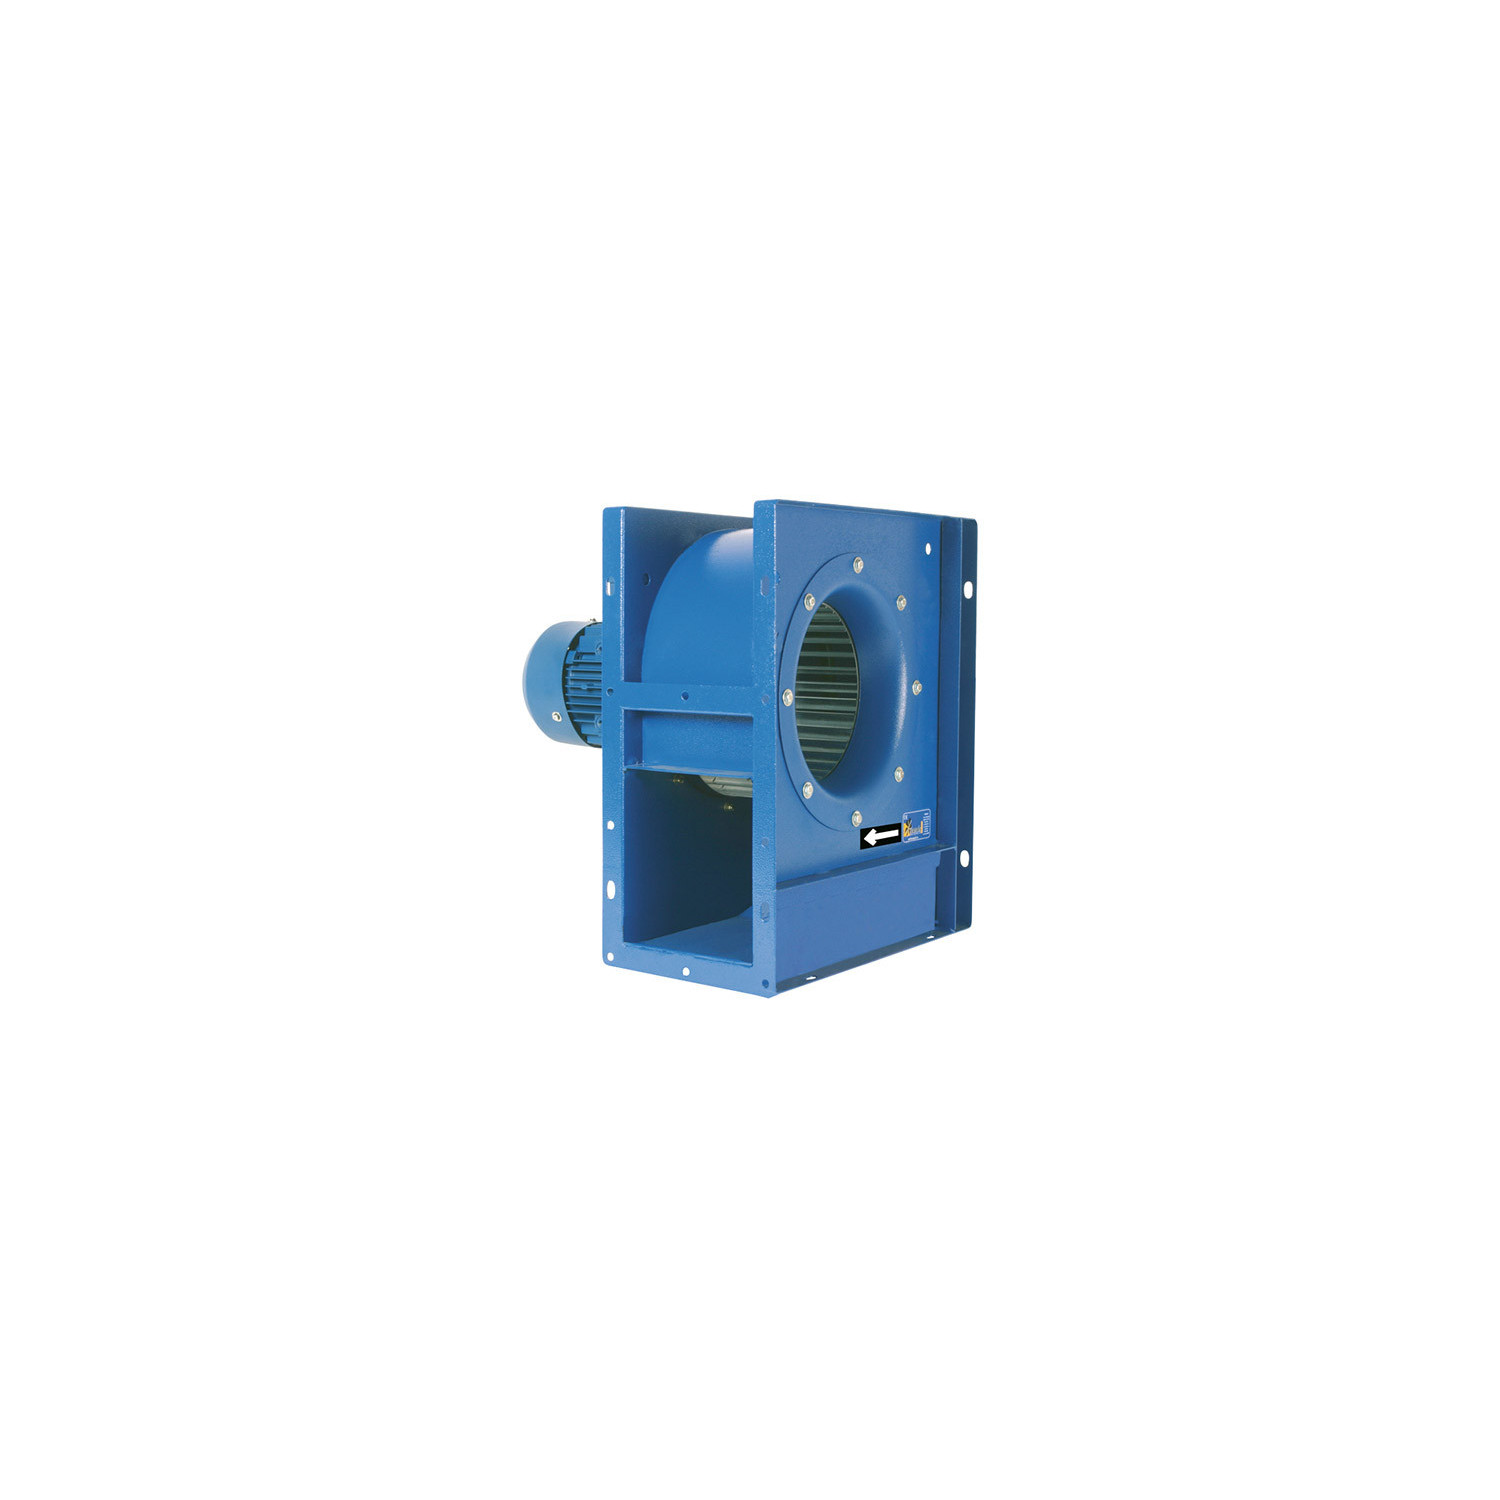 Ventilateur centrifuge moyenne pression MBC Ø2510T6 3/4